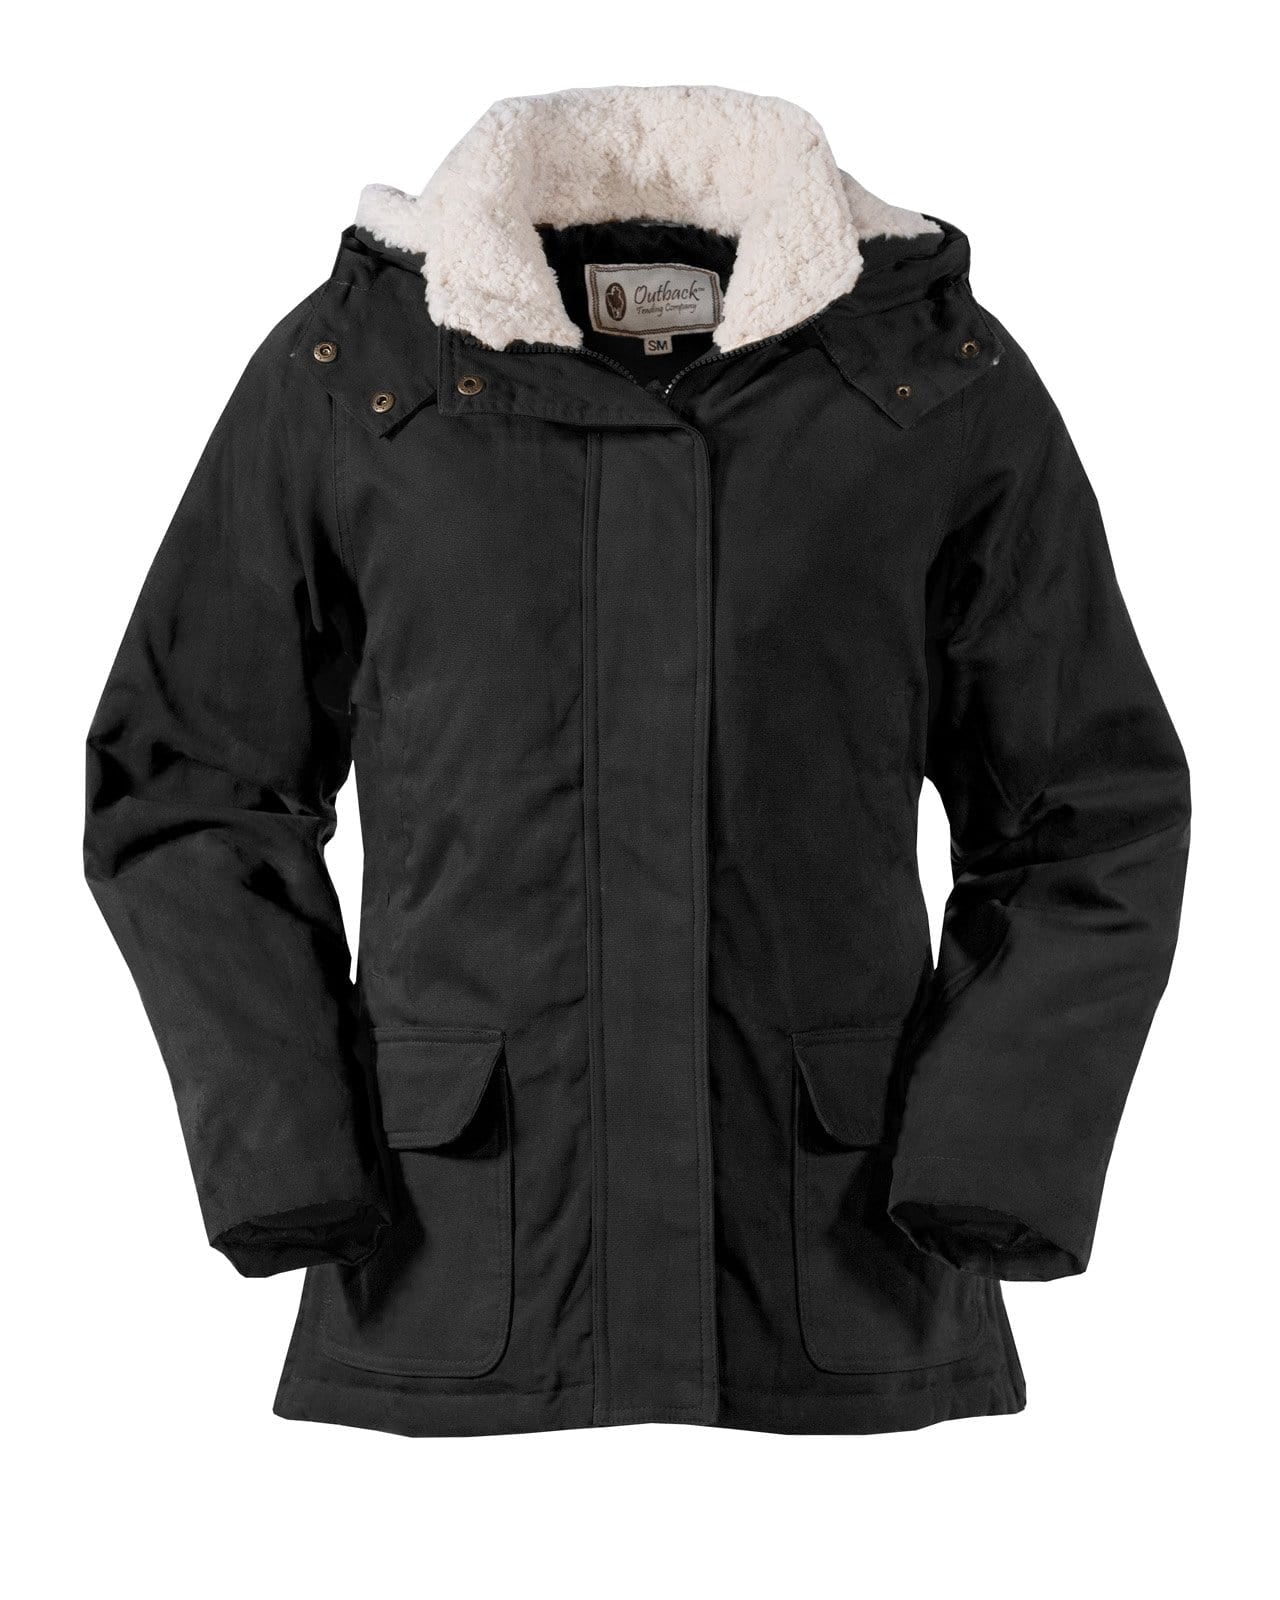 Prøv det vælge kost Women's Juniper Jacket | Jackets by Outback Trading Company |  OutbackTrading.com